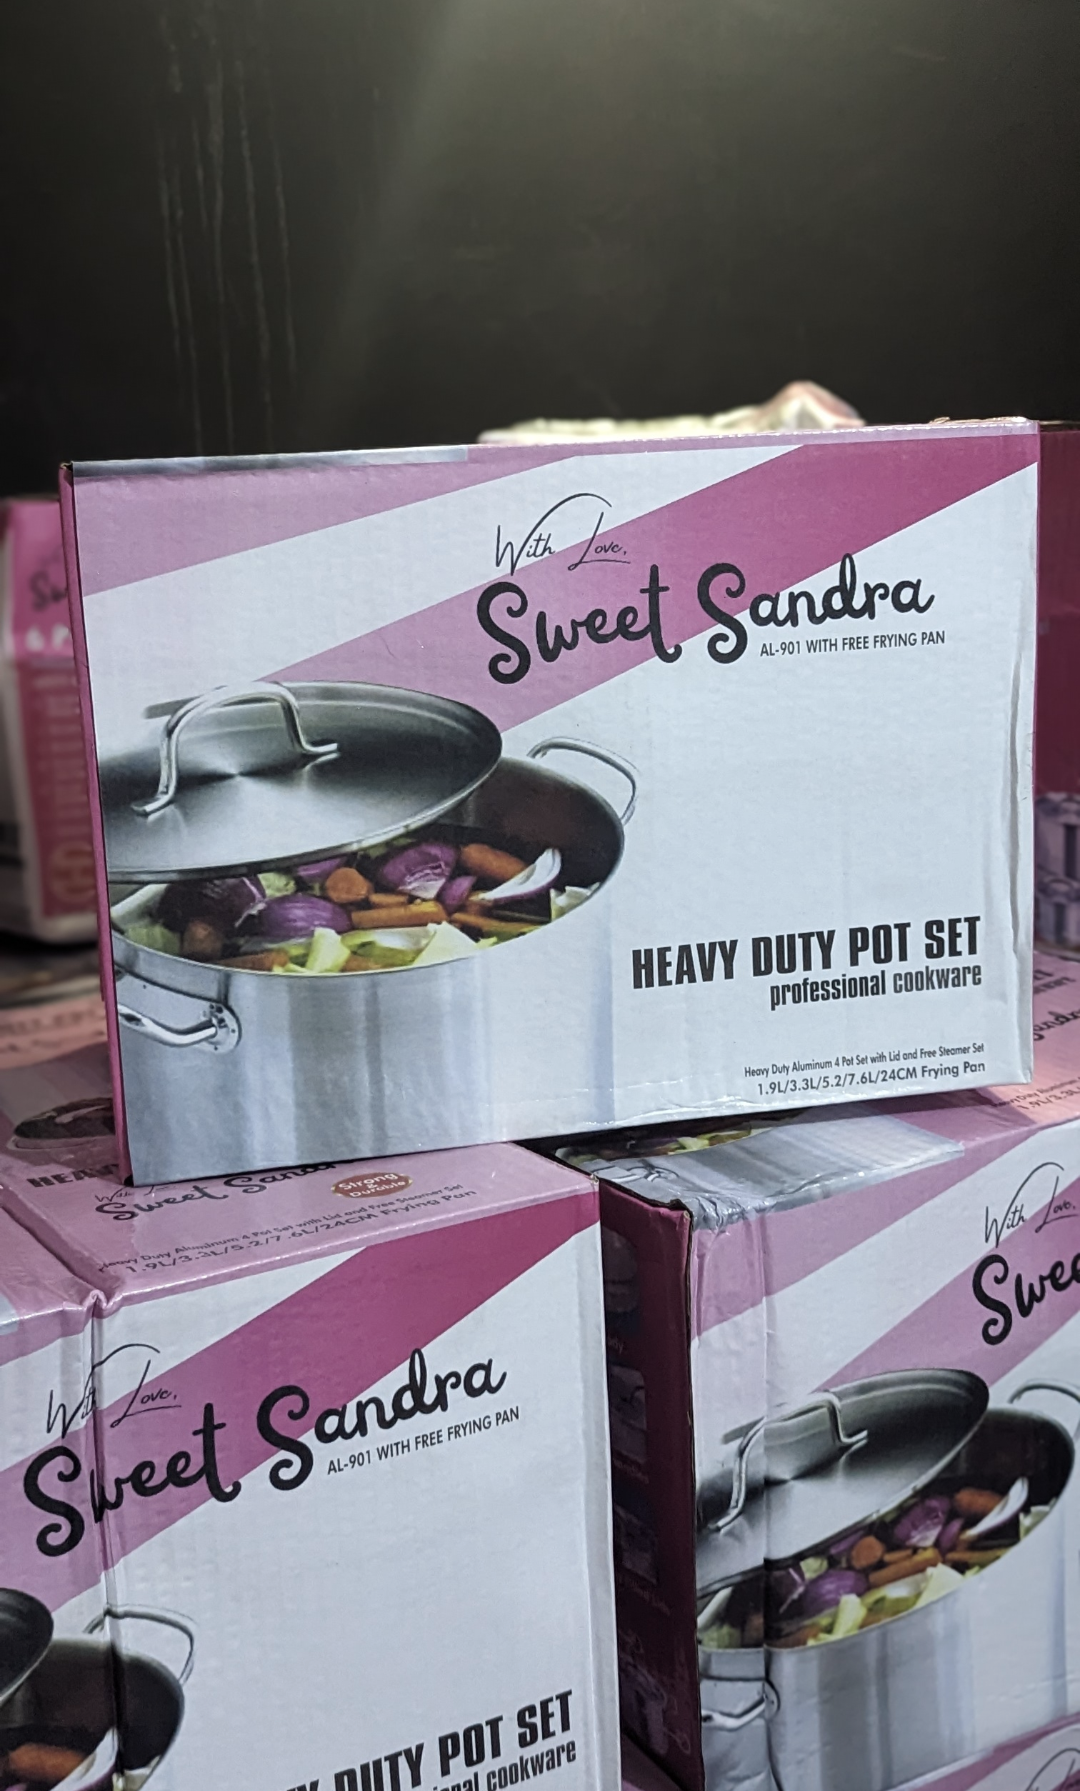 Sweet Sandra Heavy duty pot set (sizes 7/5/3/2liters pots + free frying pan)